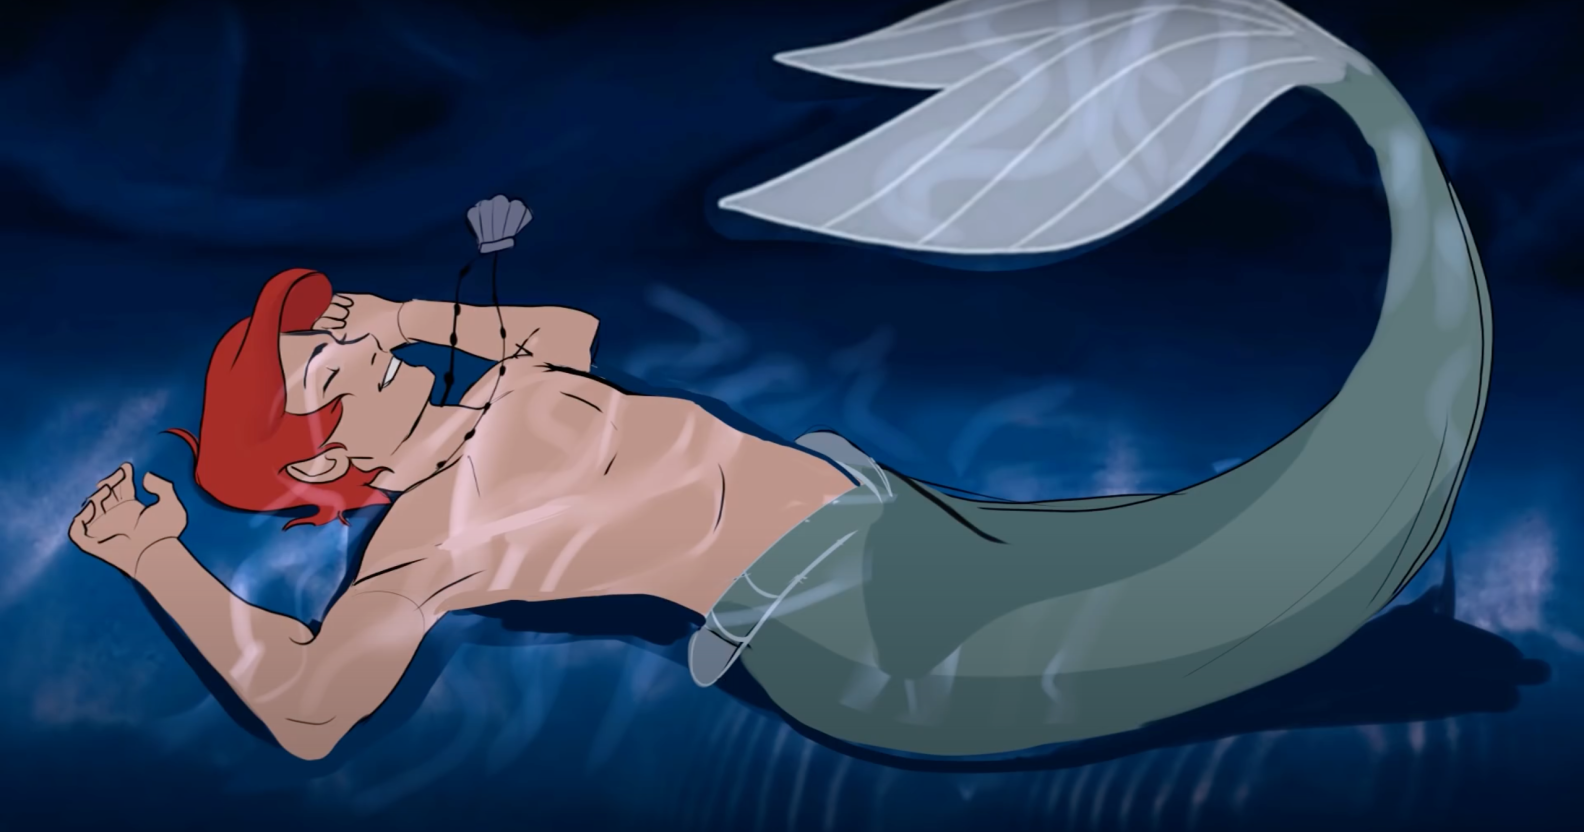 Little Mermaid Lesbian Cartoon Porn - The Little Mermaid: Queer animator reimagines Ariel as a man